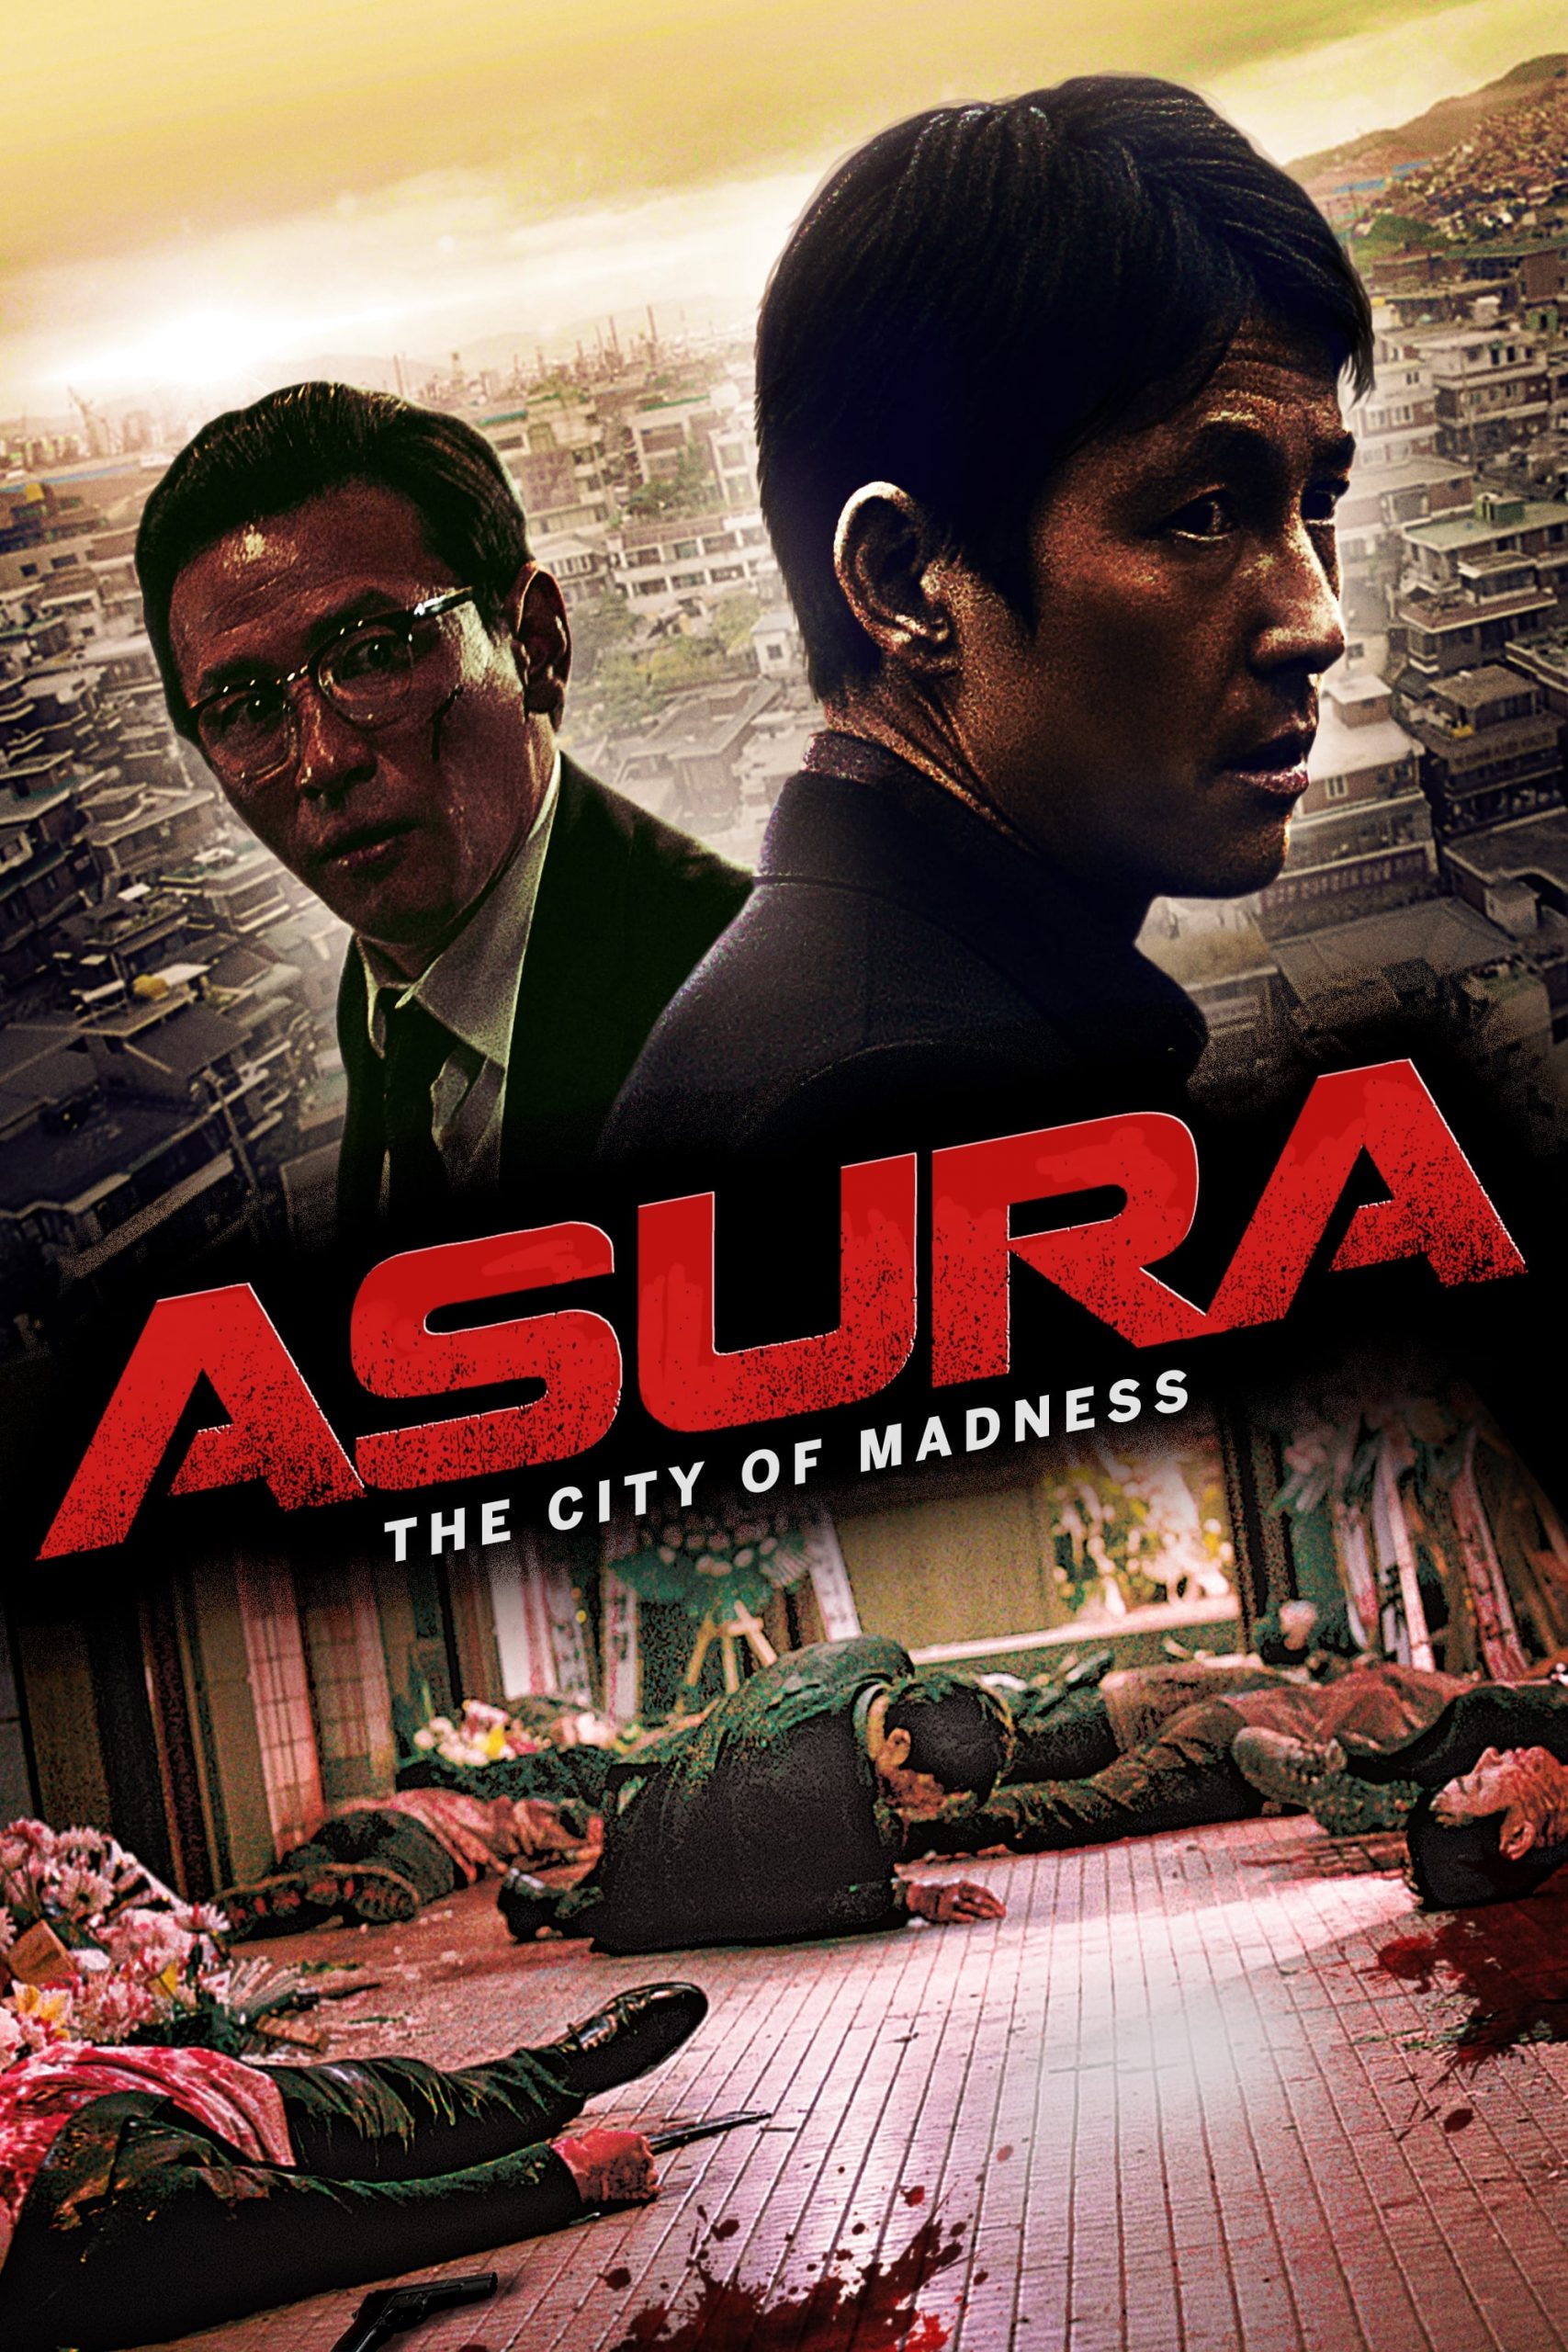 ดูหนังออนไลน์HD Asura The City of Madness (2016) เมืองคนชั่ว หนังเต็มเรื่อง หนังมาสเตอร์ ดูหนังHD ดูหนังออนไลน์ ดูหนังใหม่